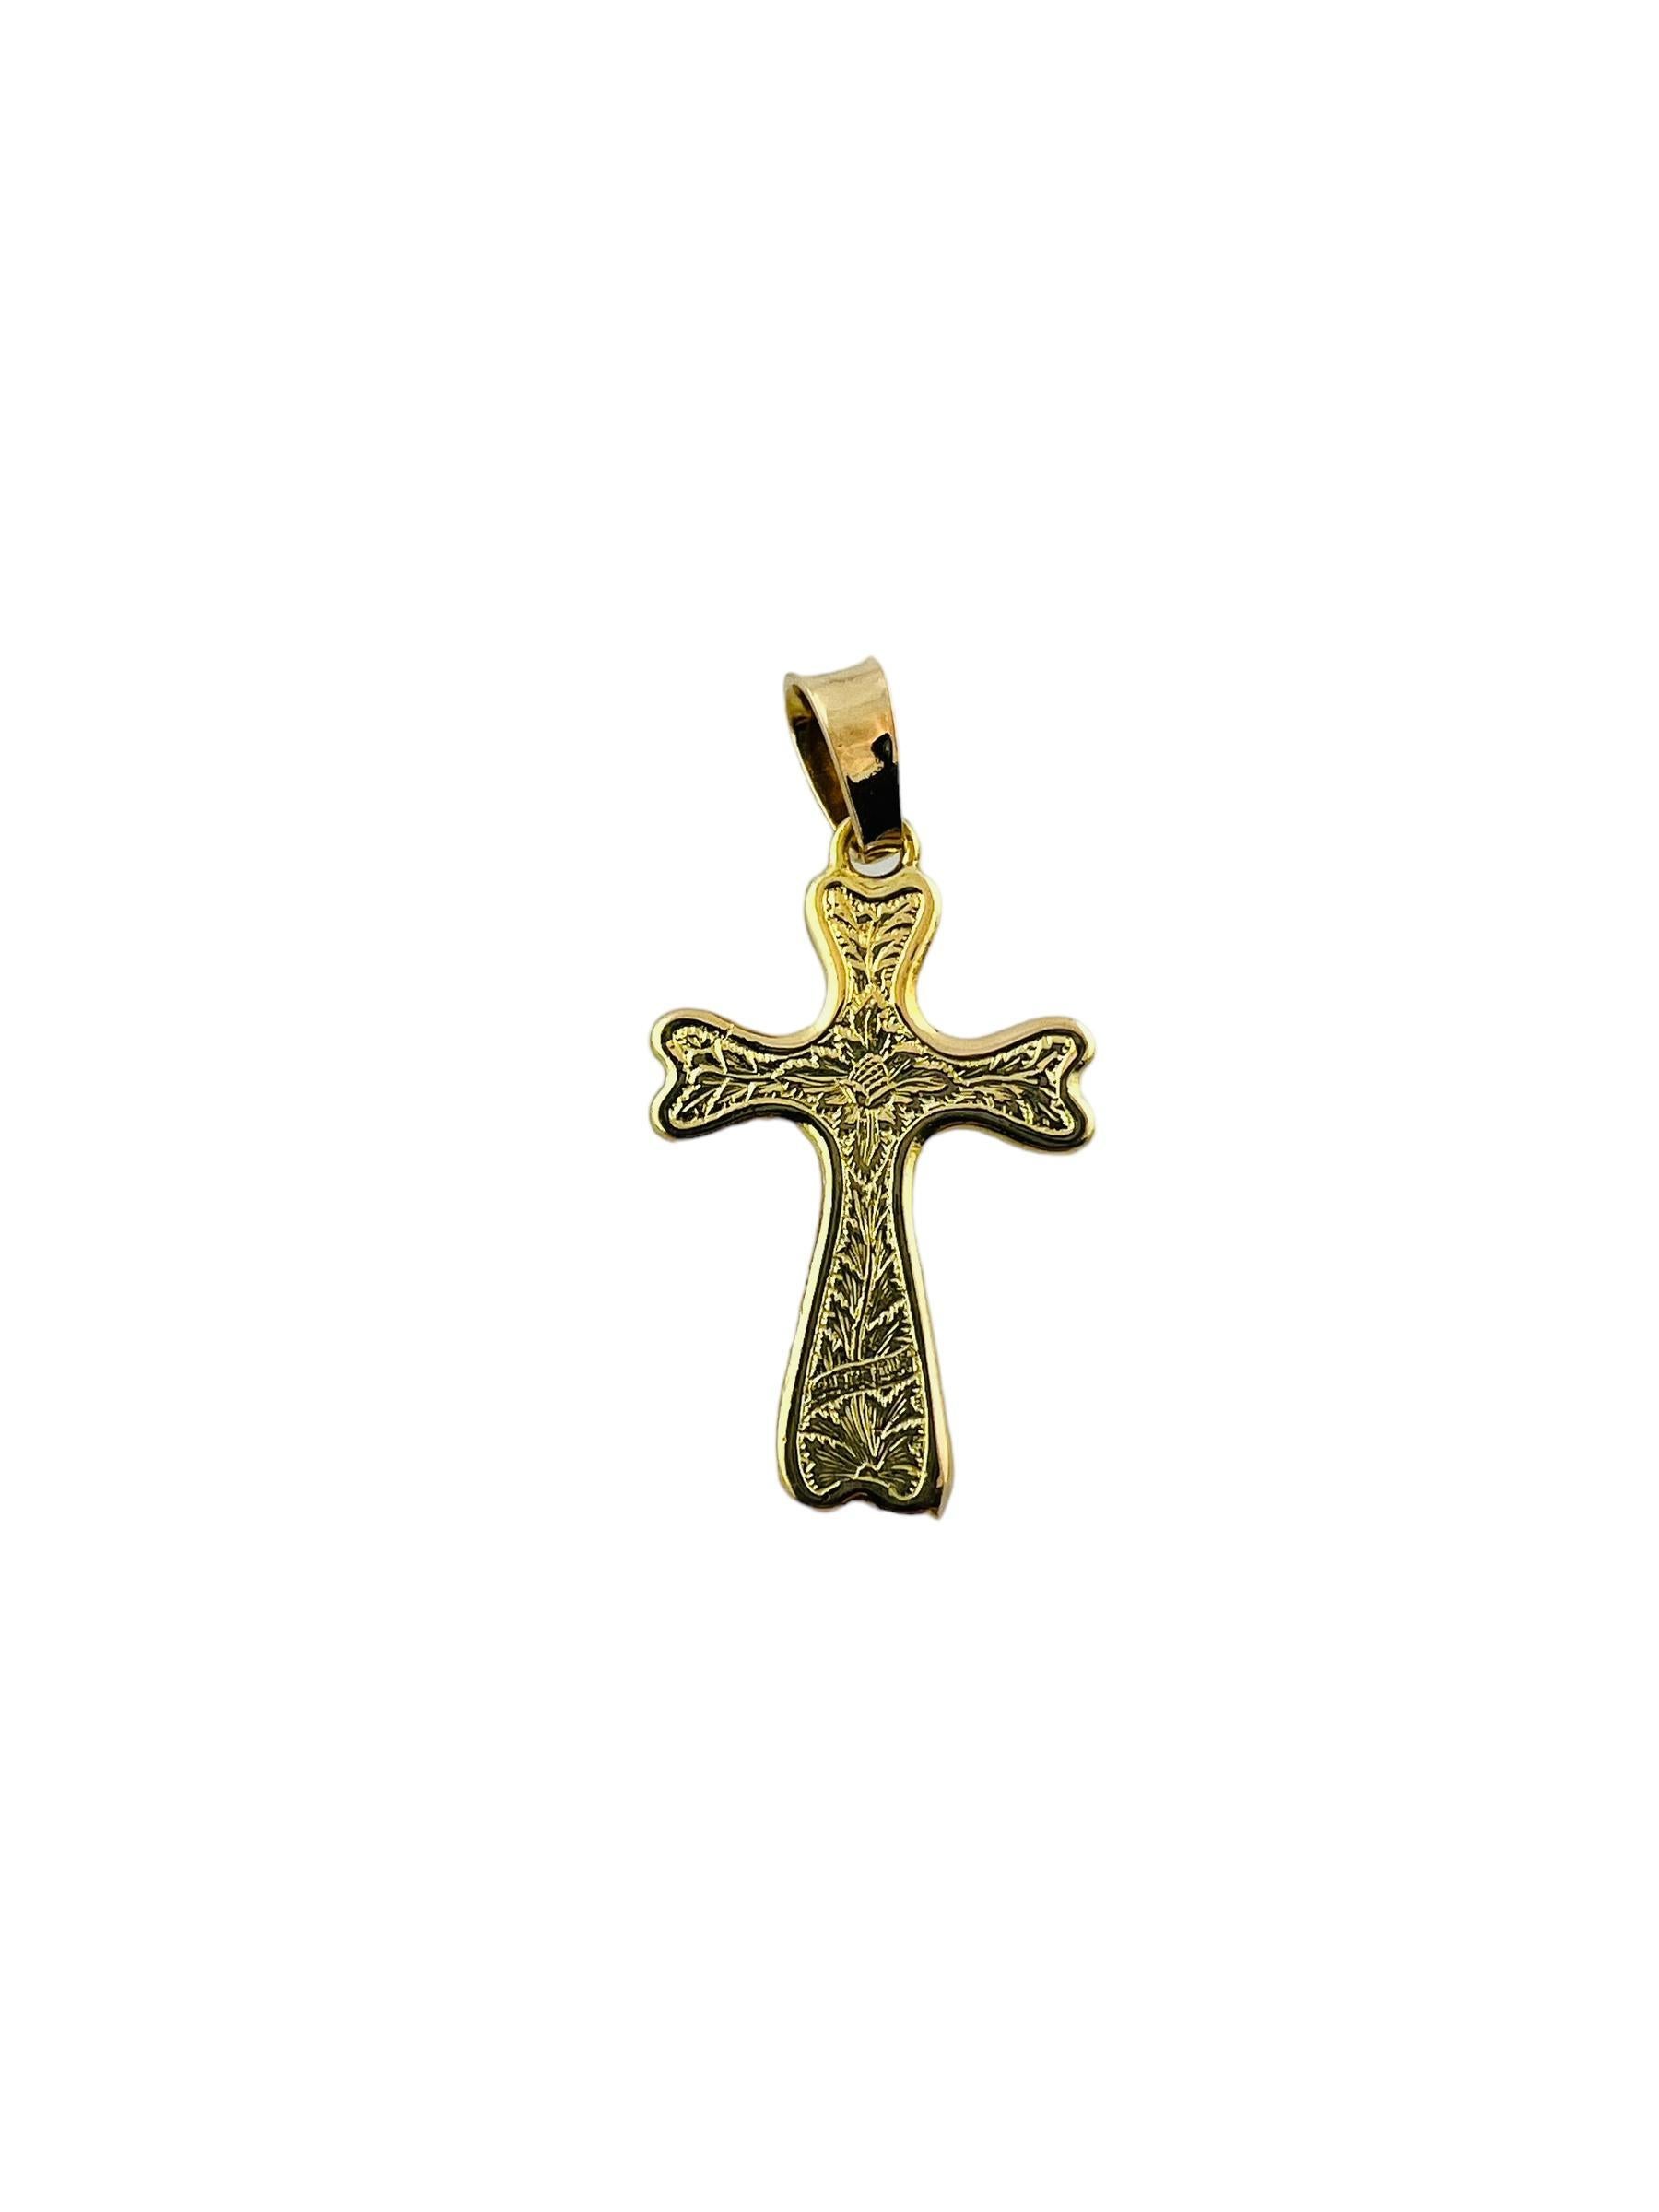 Pendentif croix crucifix en or jaune 18K

Ce joli pendentif en forme de crucifix est serti en or jaune 18 carats.

Le pendentif mesure environ 28,1 mm x 18,2 mm x 2,8 mm.

2.8 g / 1.8 dwt

Estampillé 750

*Ne vient pas avec la chaîne

Très bon état.